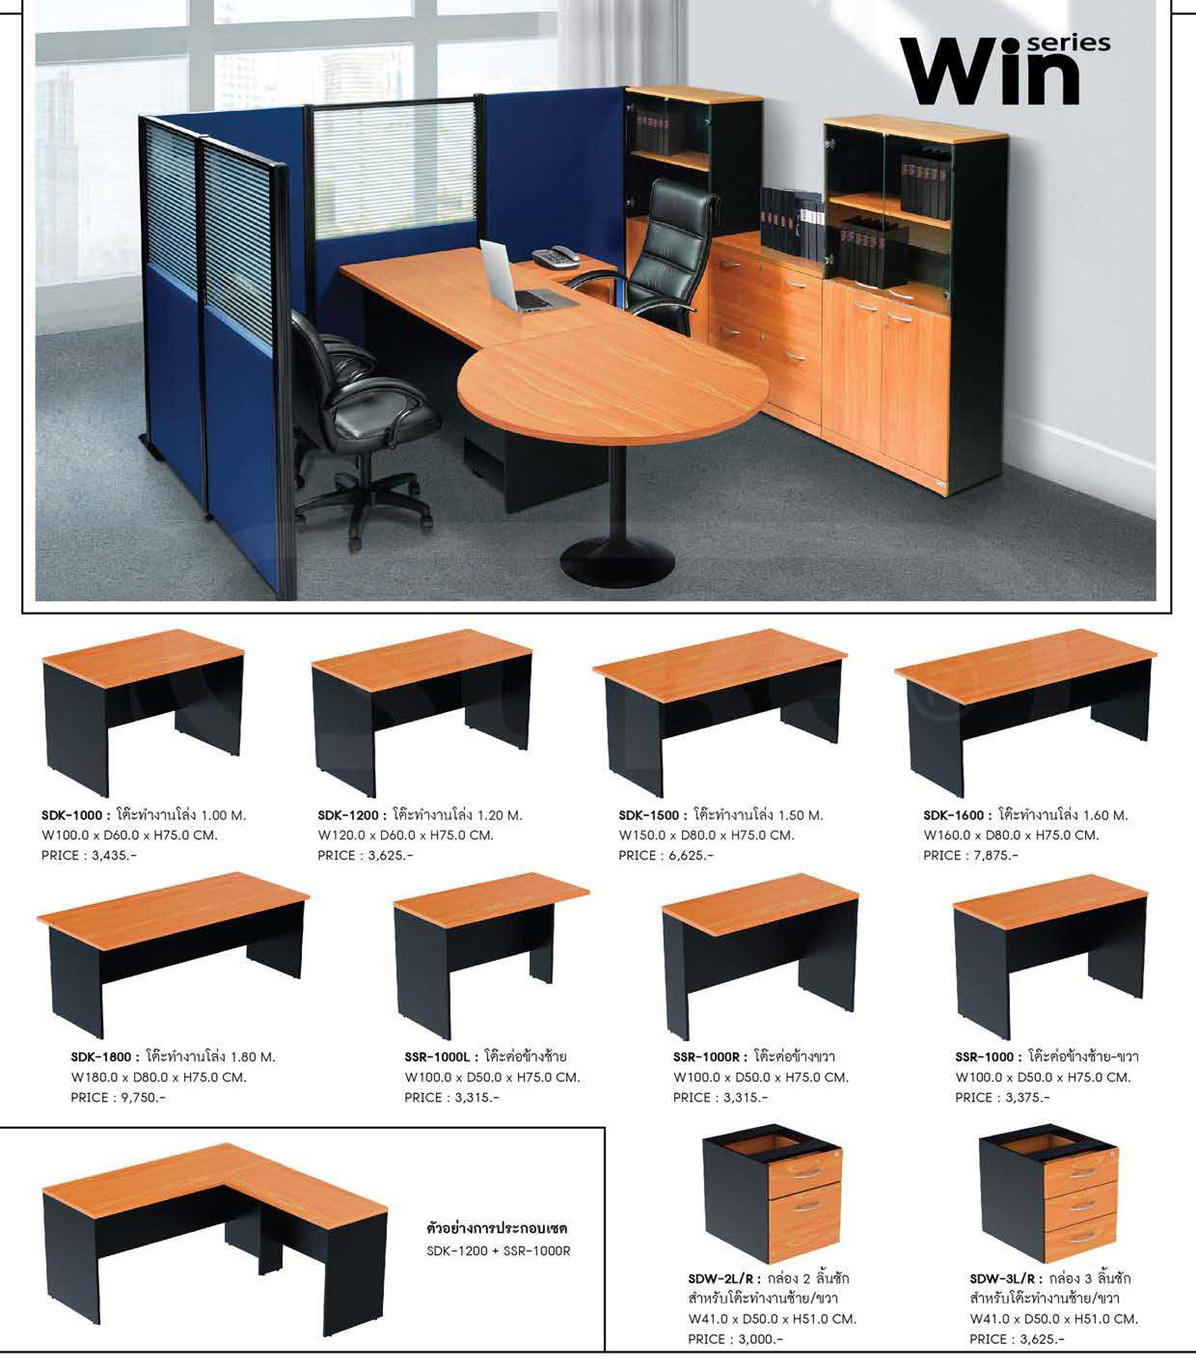 94073::SSR-1000::A Sure melamine office table. Dimension (WxDxH) cm : 100x50x75